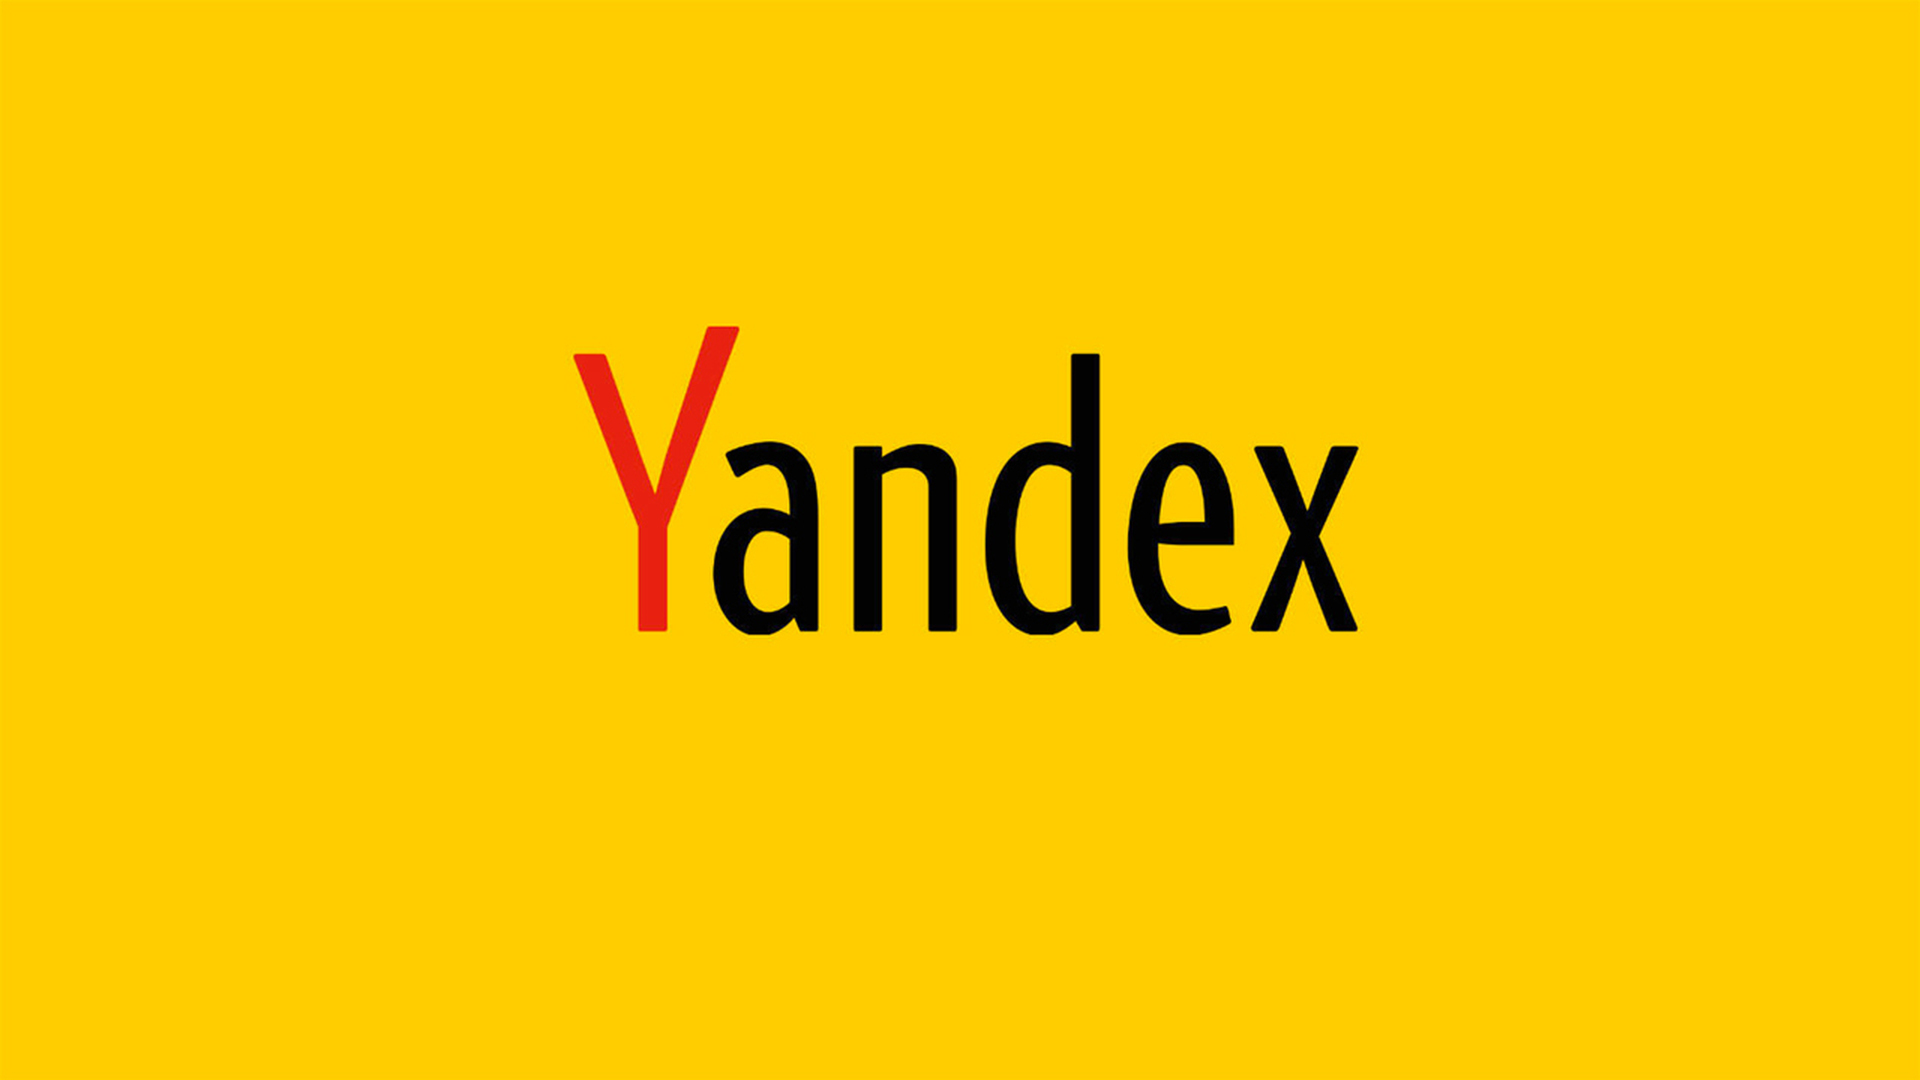 Яндекс готовится начать серийное производство роботов-курьеров. Сейчас в сборке 130 роботов, их производство должно завершиться в этом году, еще столько же находится в эксплуатации - Ъ